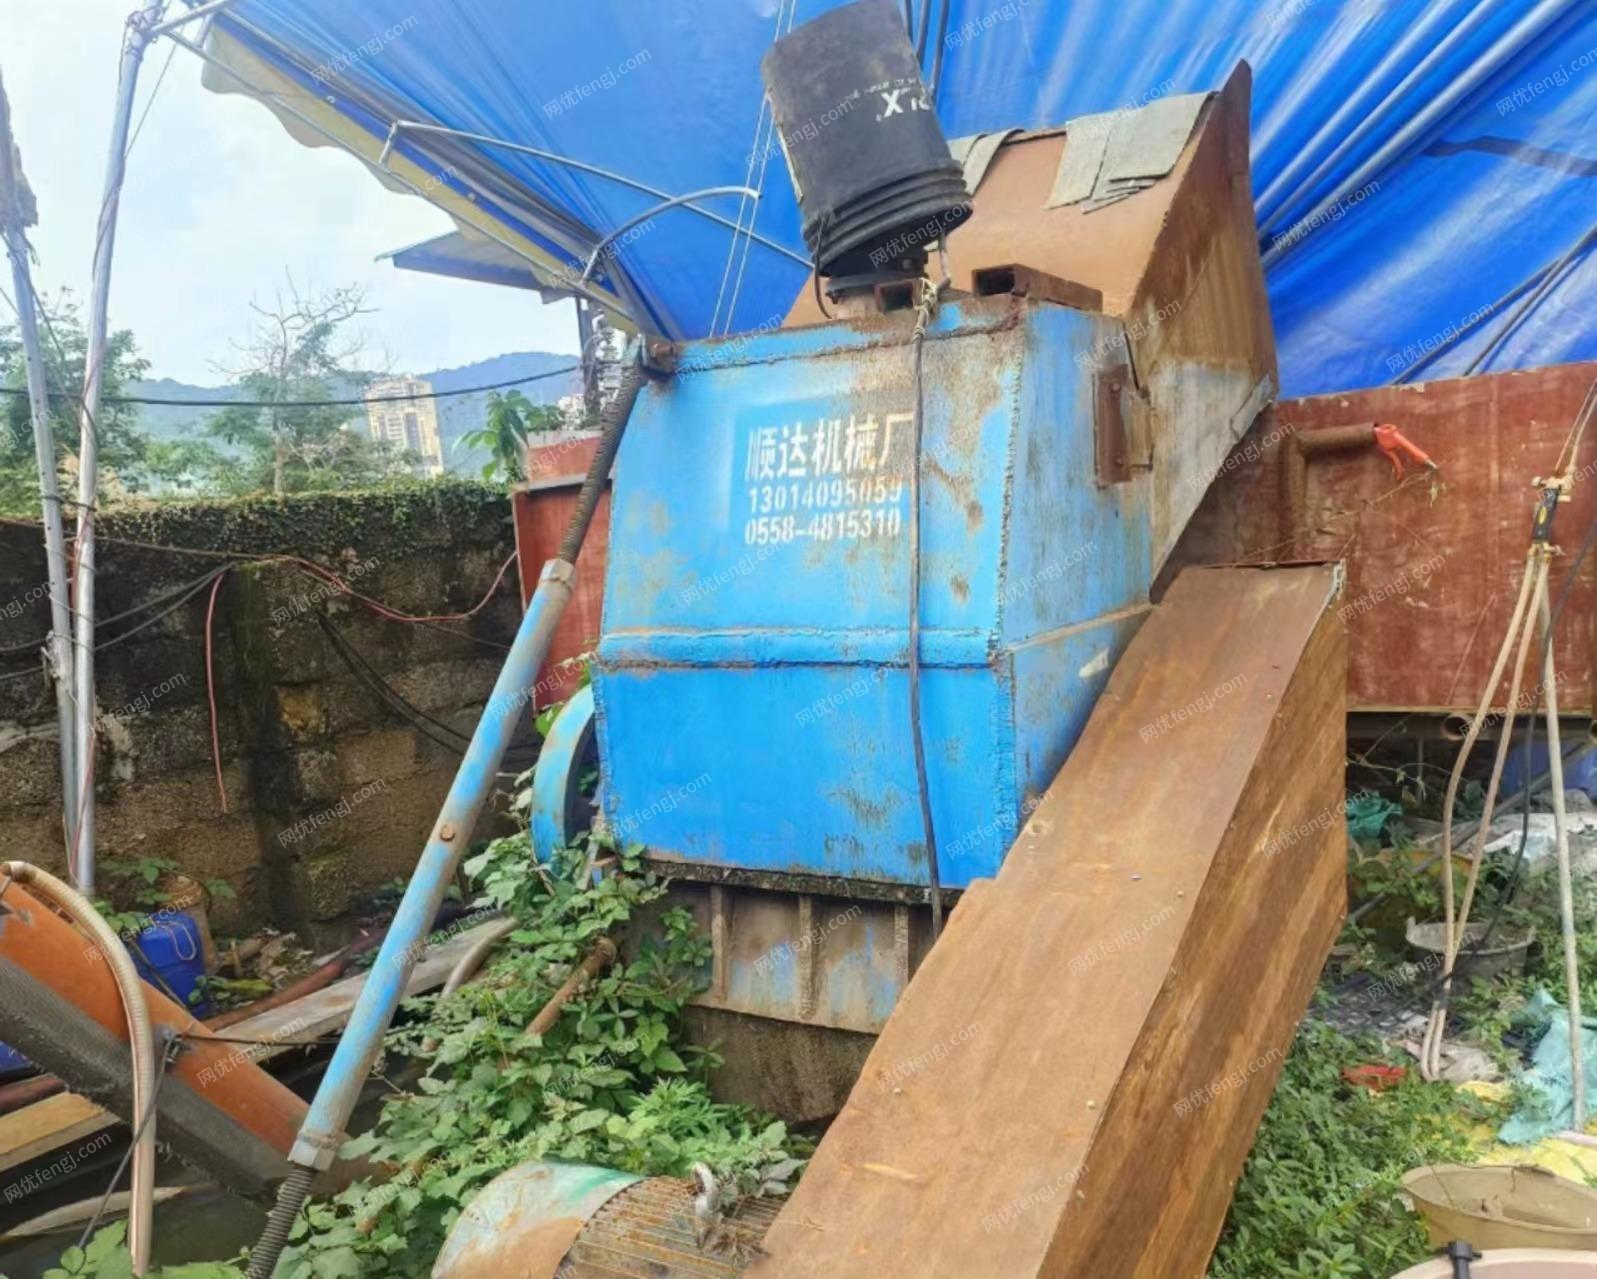 广西桂林出售80塑料破碎机一套两副刀，提料机，起动电厢。强磁输送带一条，磨刀机一台，打气泵一套，抓木机一台，4.2米高栏车一台